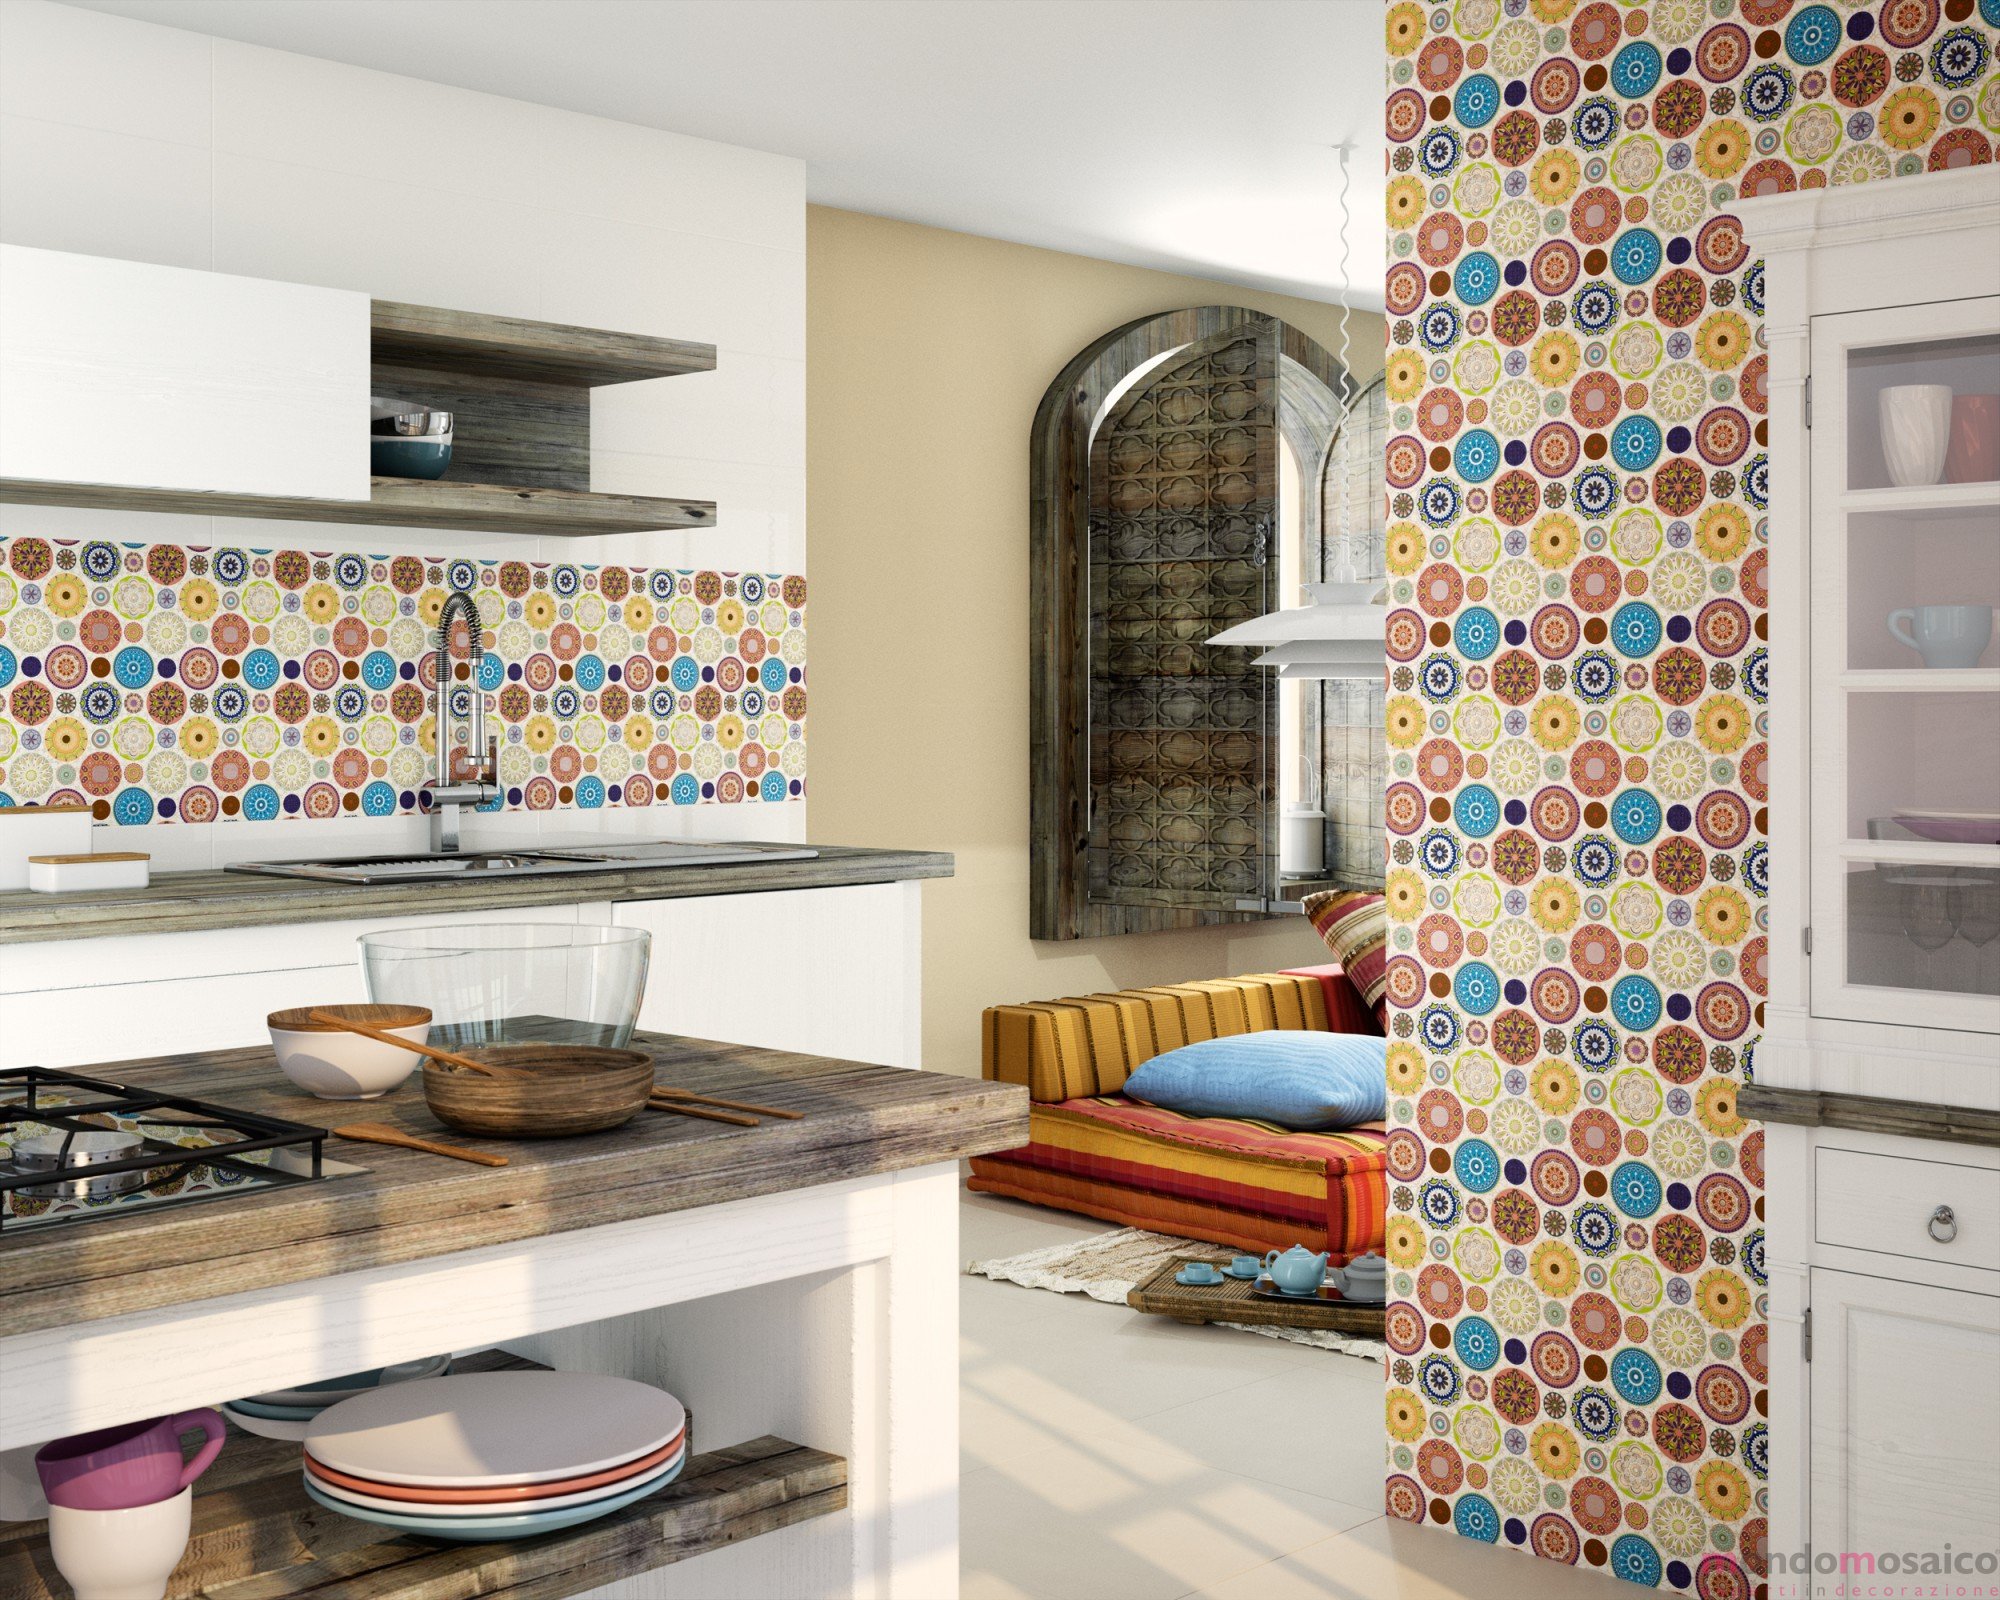 Mosaico spettacolare a tessere rotonde con decori — Mondo Mosaico Italia